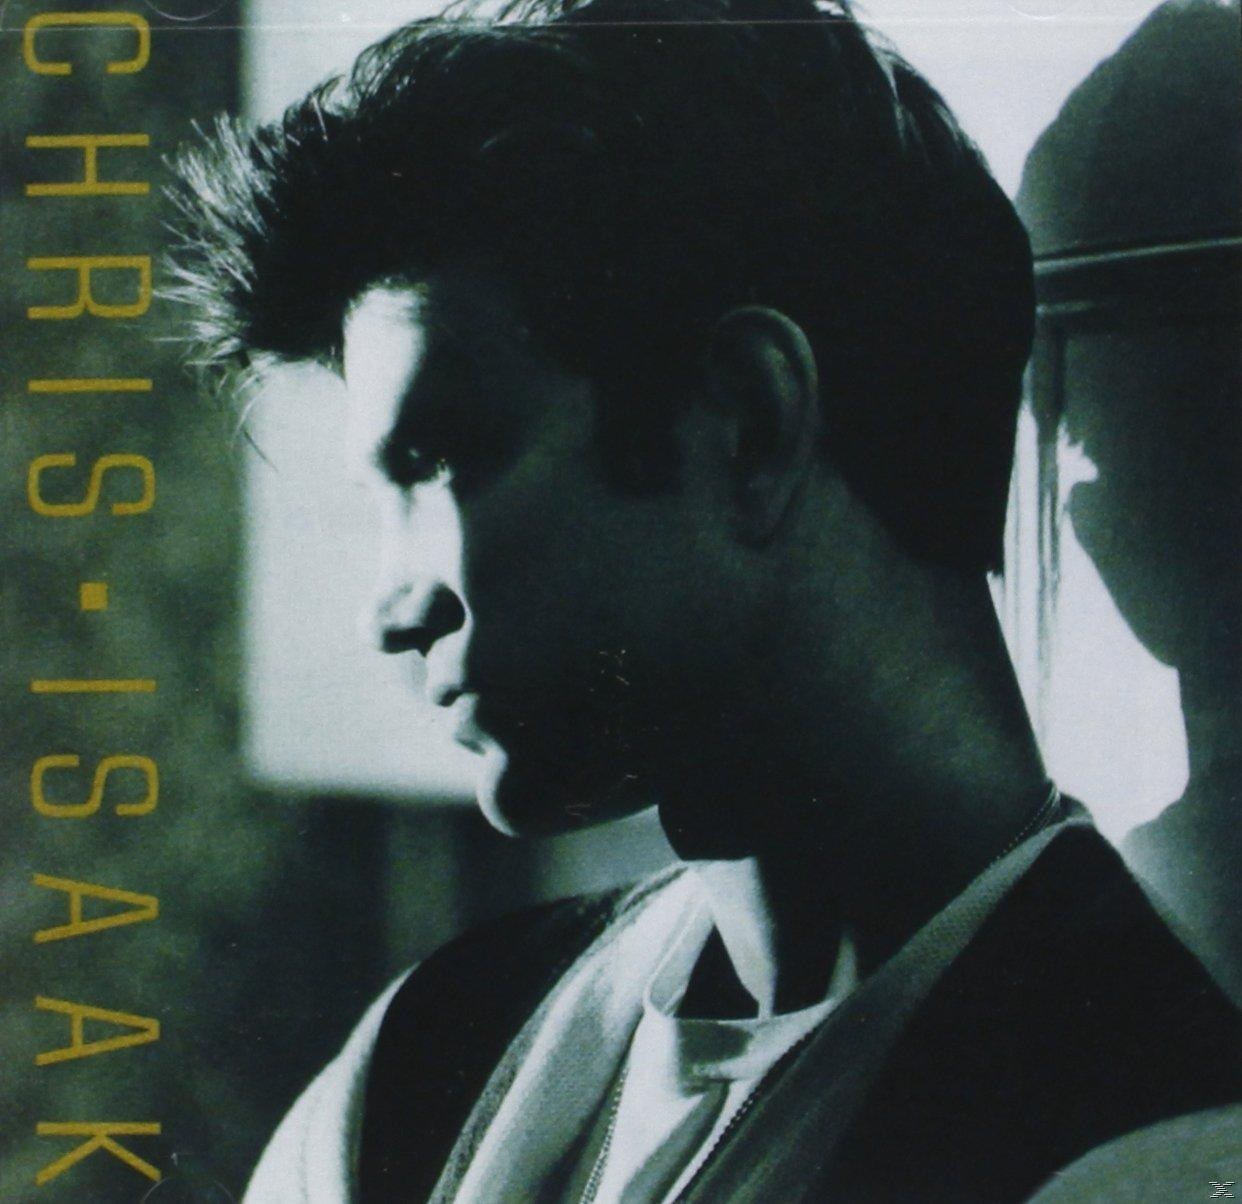 Chris Isaak - - (CD) Chris Isaak